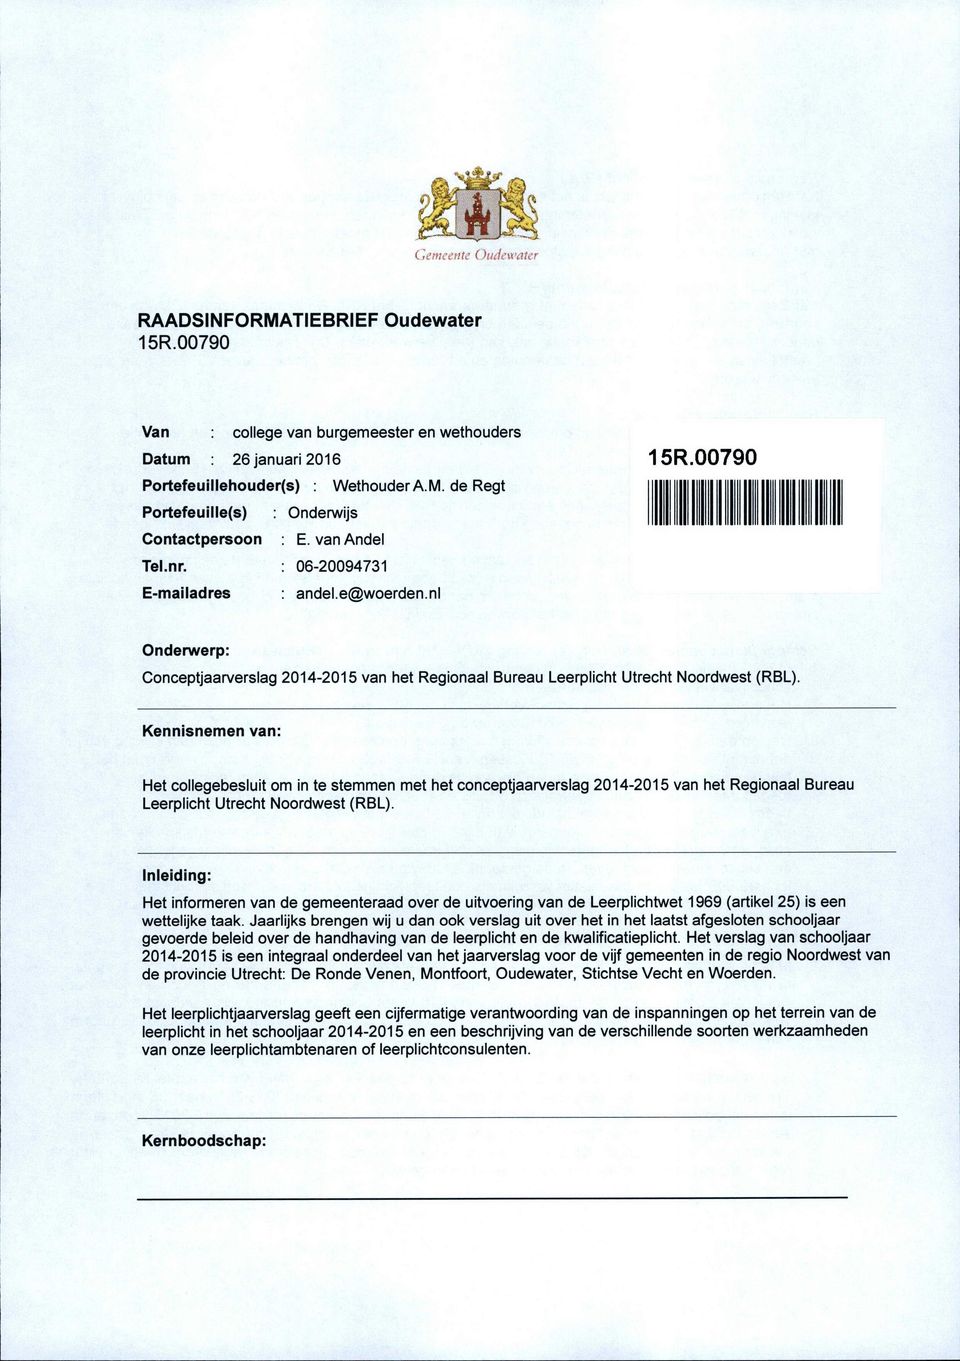 Kennisnemen van: Het collegebesluit om in te stemmen met het conceptjaarverslag van het Regionaal Bureau Leerplicht Utrecht Noordwest (RBL).